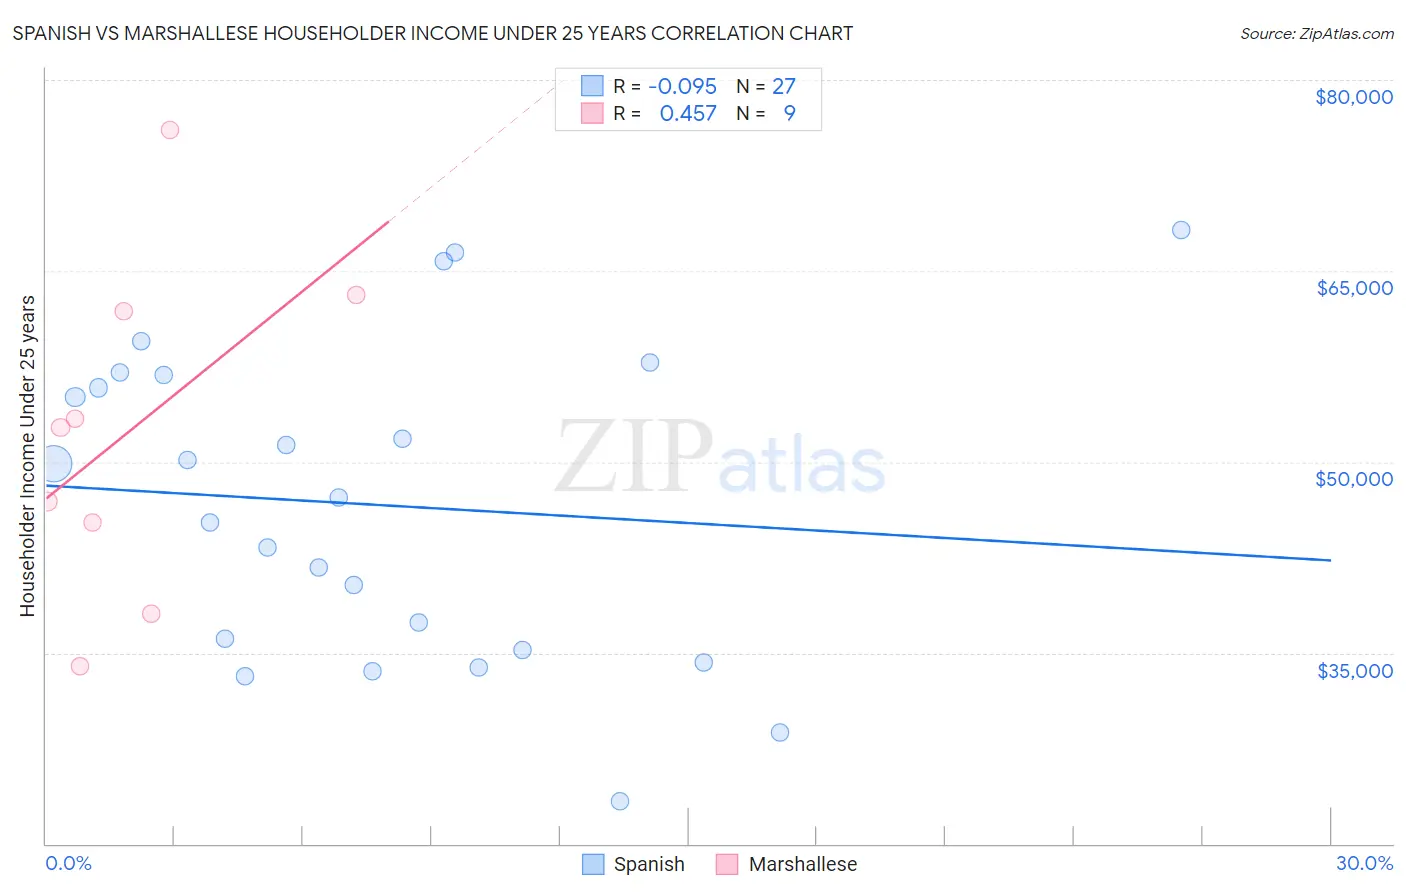 Spanish vs Marshallese Householder Income Under 25 years